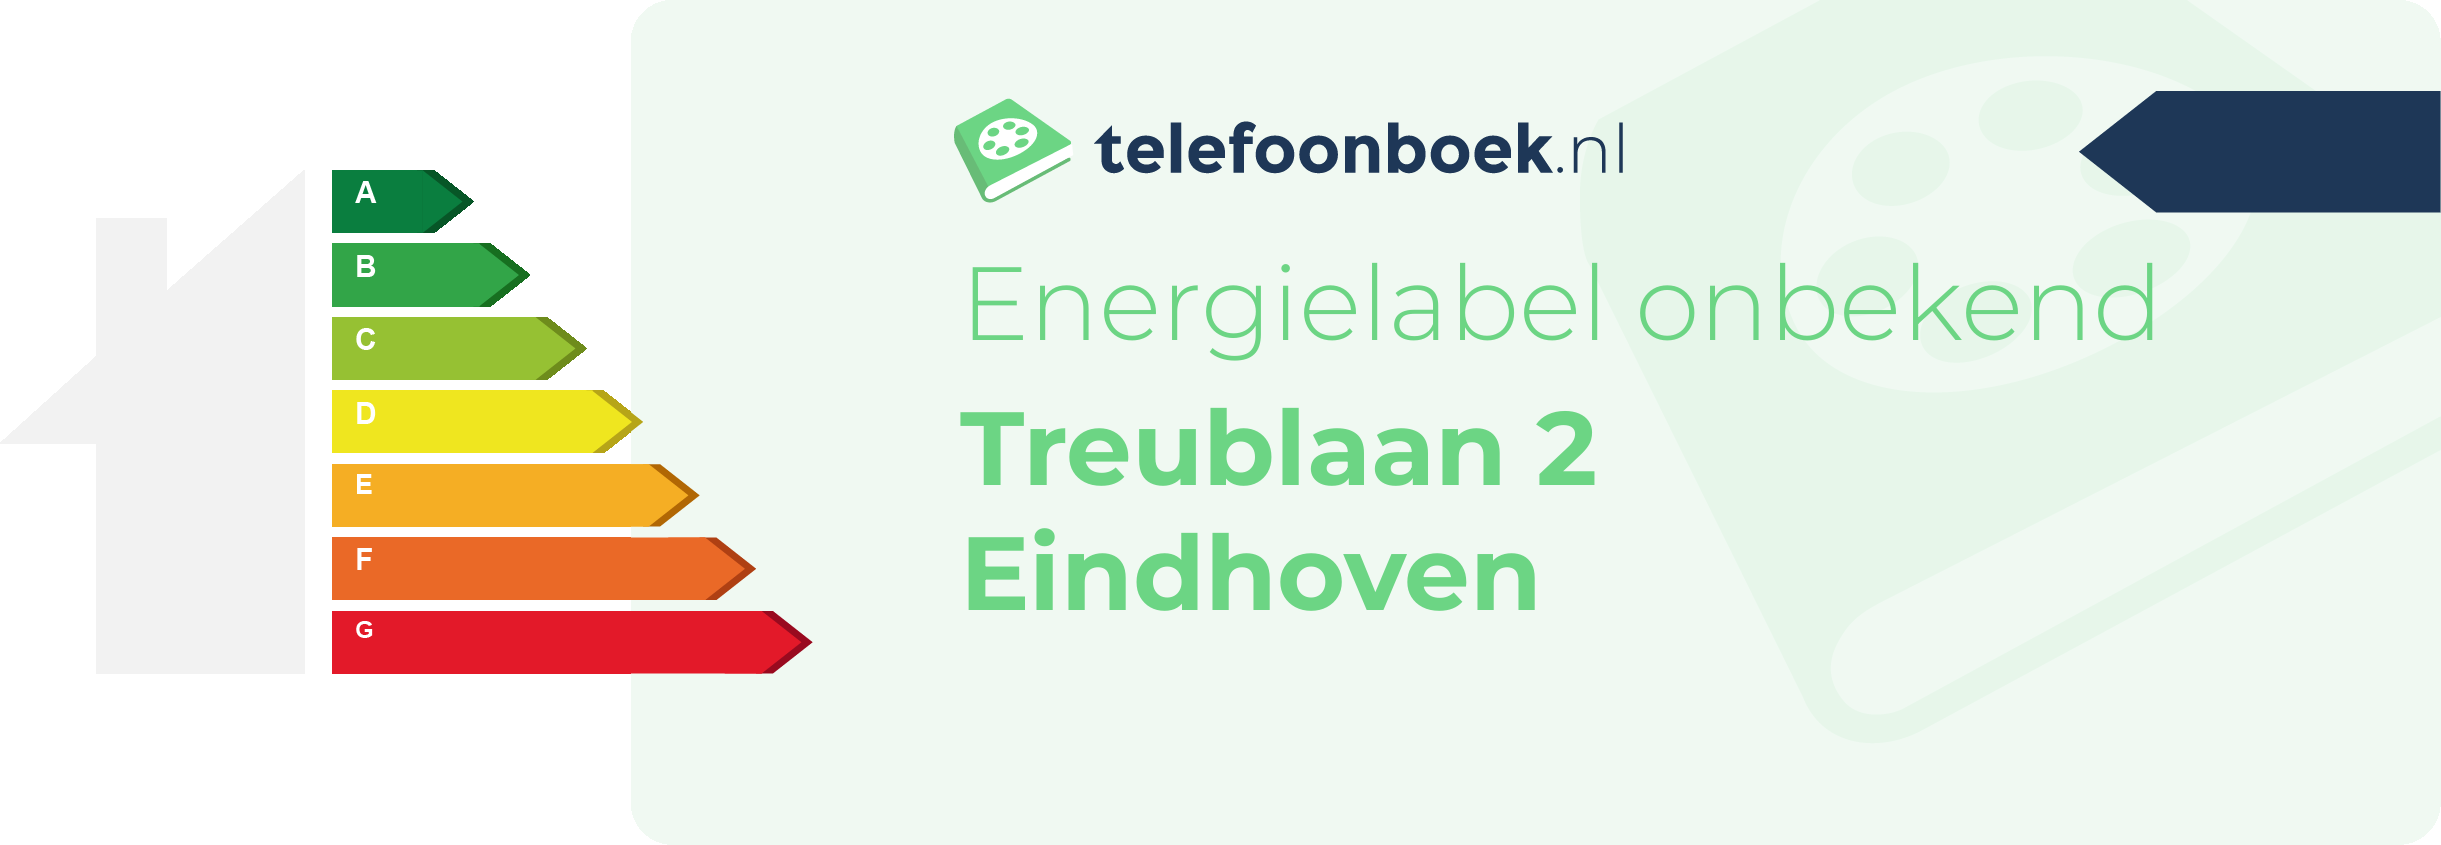 Energielabel Treublaan 2 Eindhoven